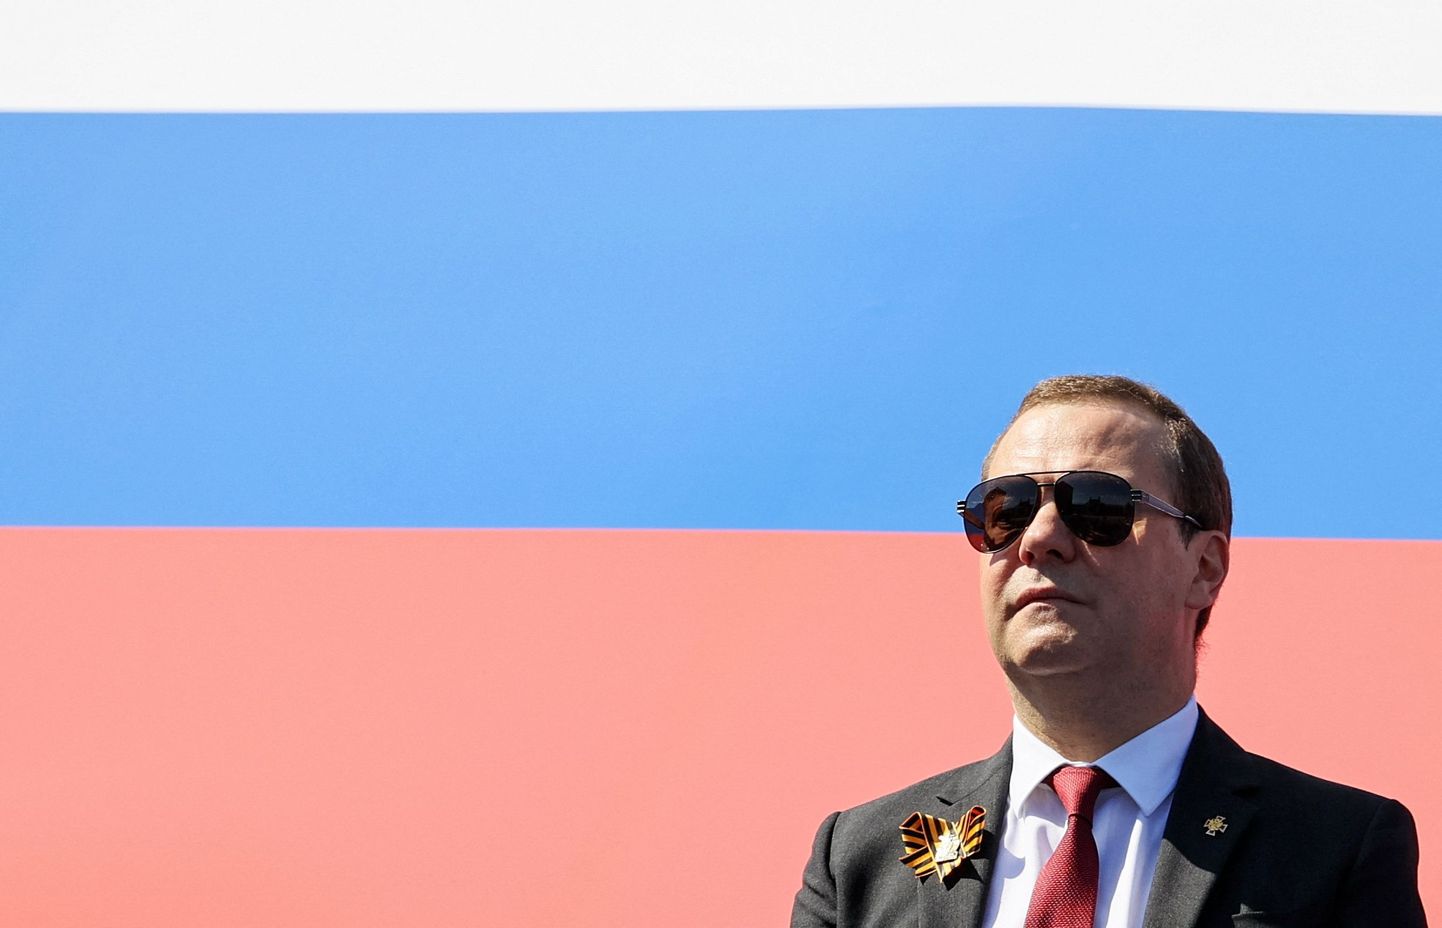 Venemaa julgeolekunõukogu asejuht Dmitri Medvedev 24. juunil 2020 Moskvas Punasel väljakul